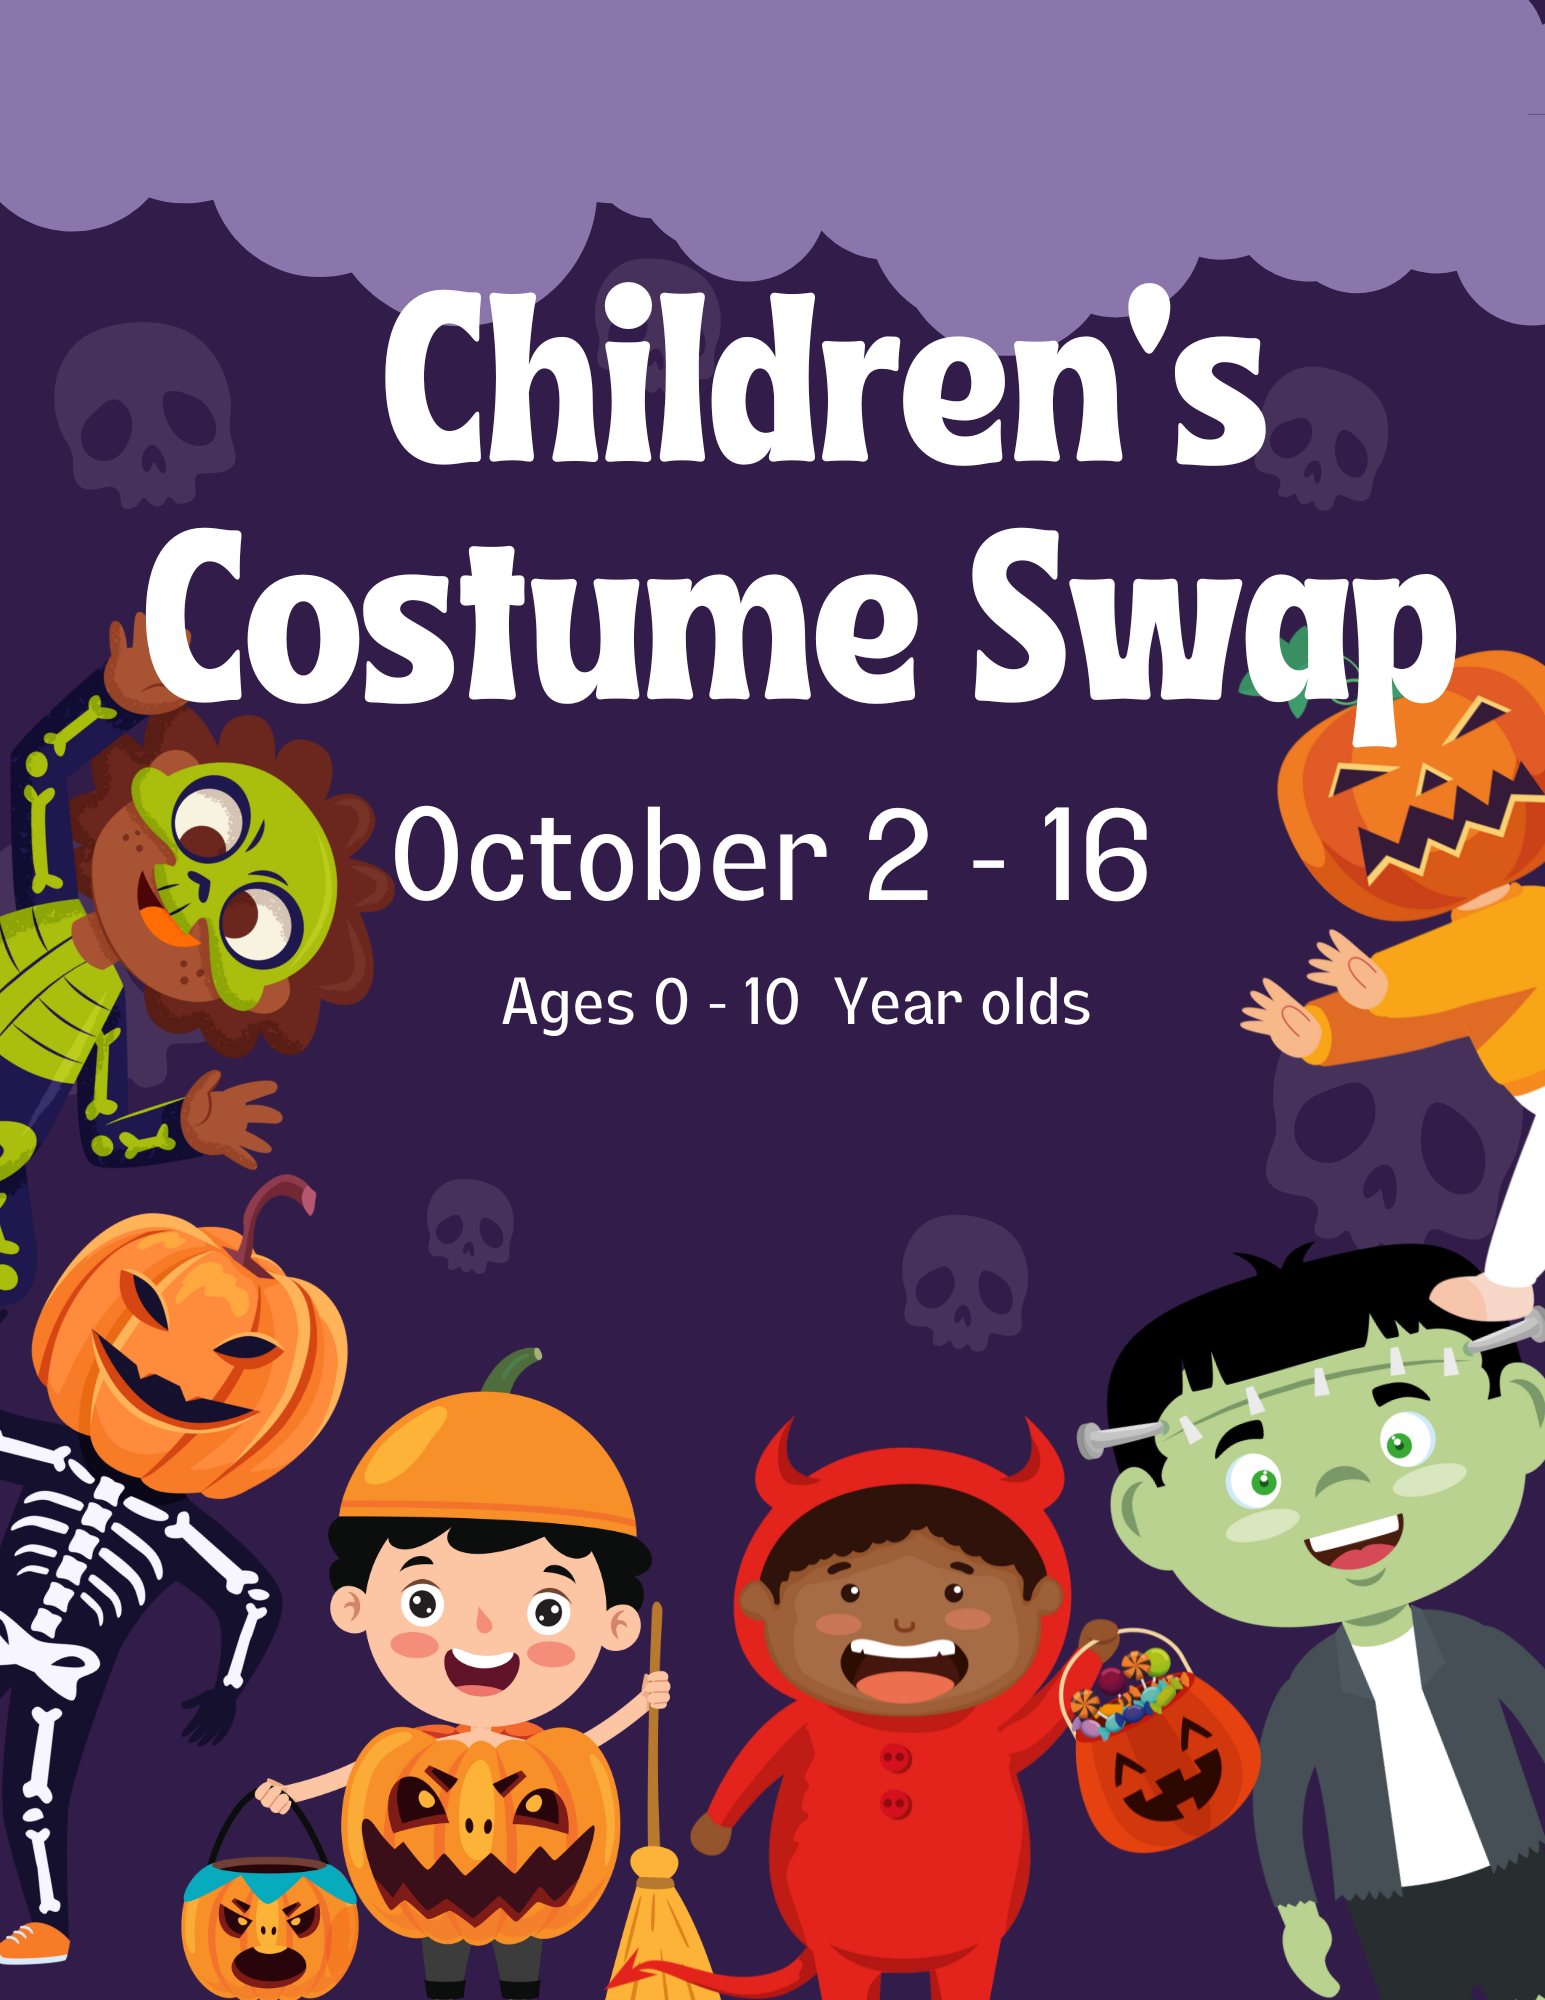 Children's Costume Swap Poster 